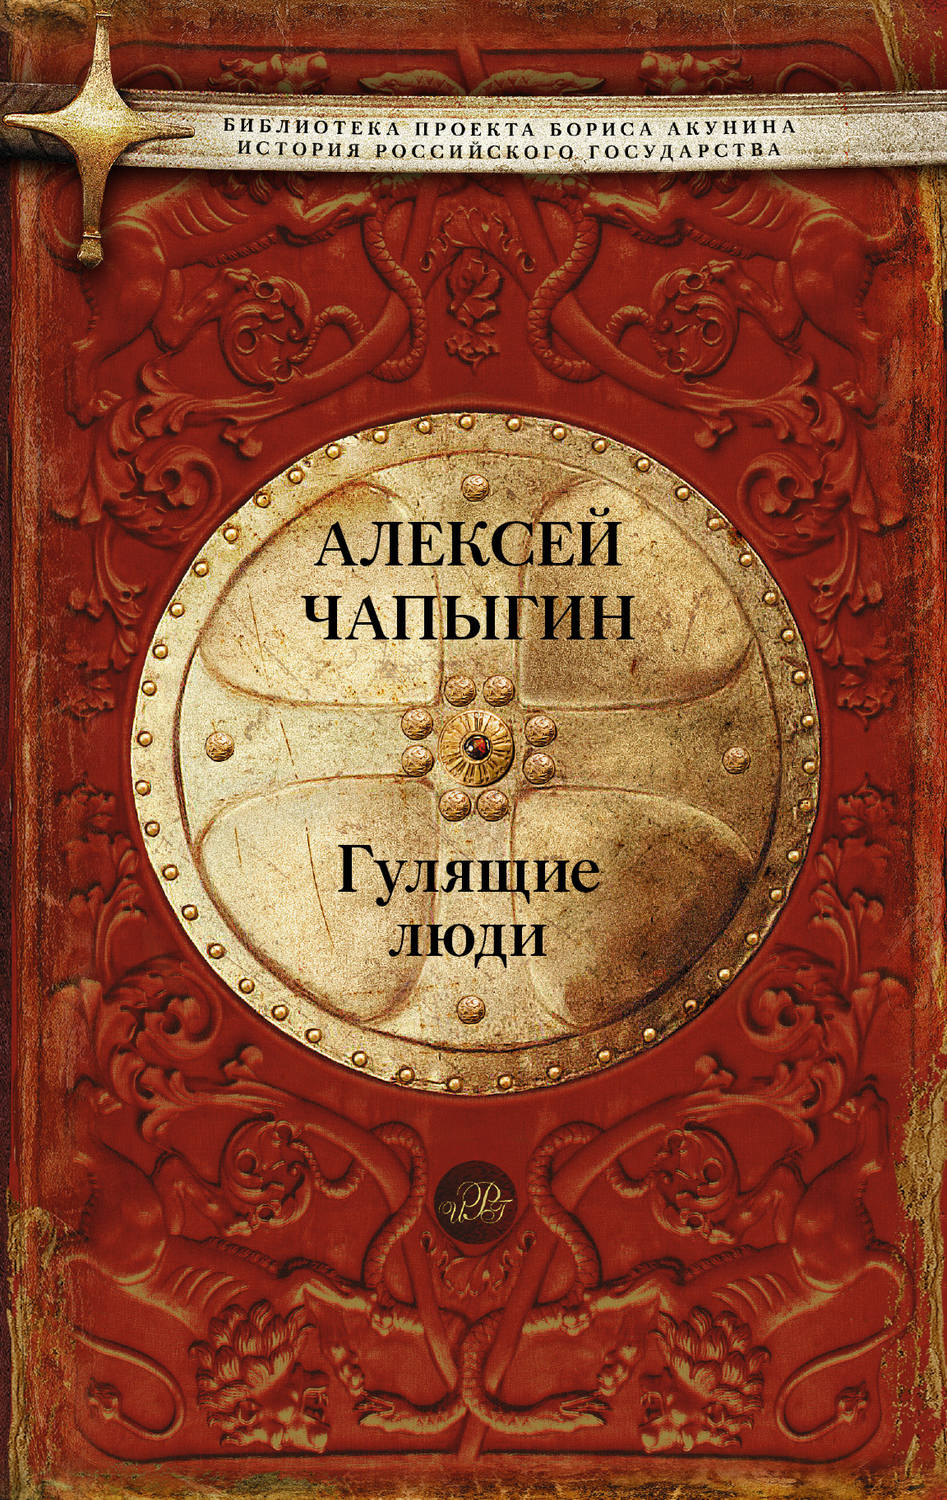 Книга история российского государства скачать бесплатно